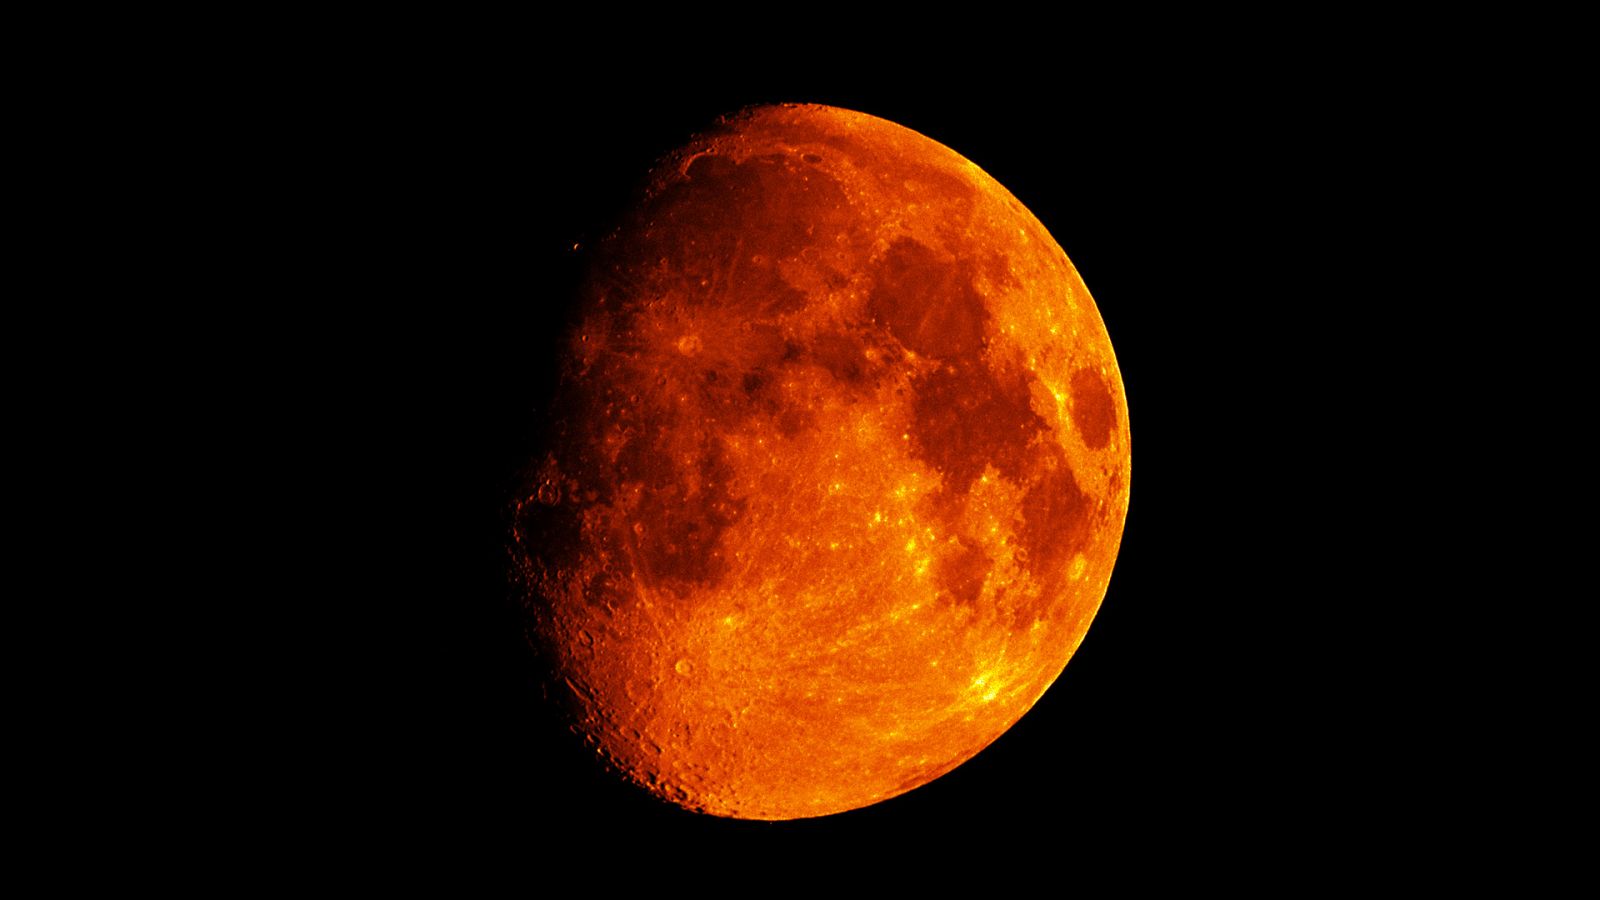 Hình ảnh của một mặt trăng đẫm máu